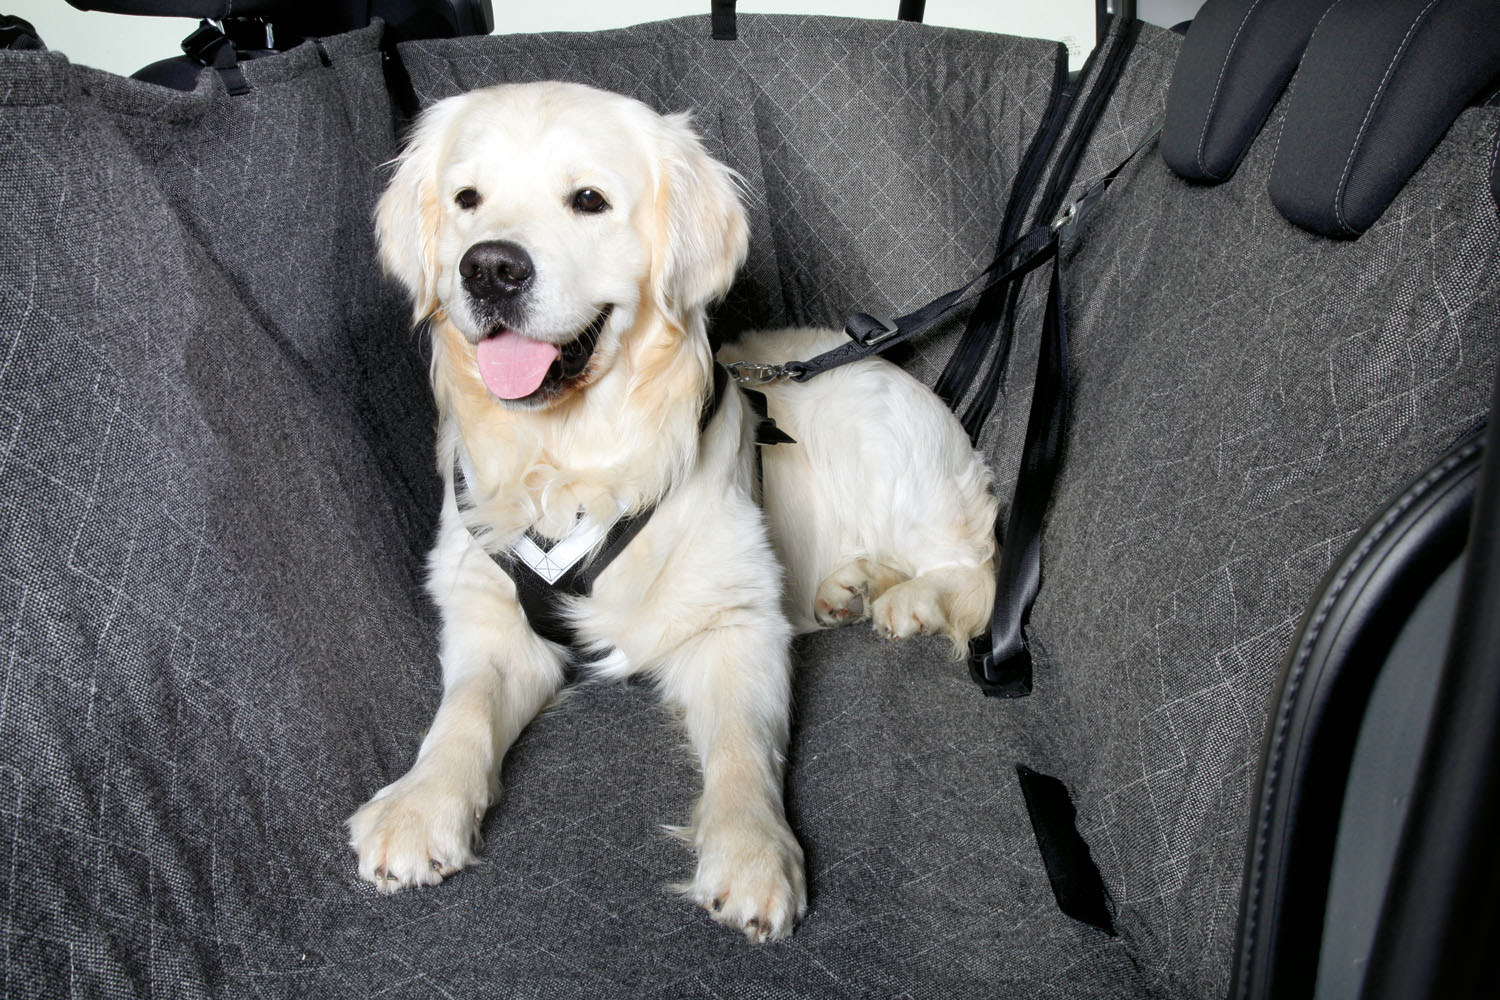 Rücksitzverbreiterung Auto Hund, von Kleinmetall